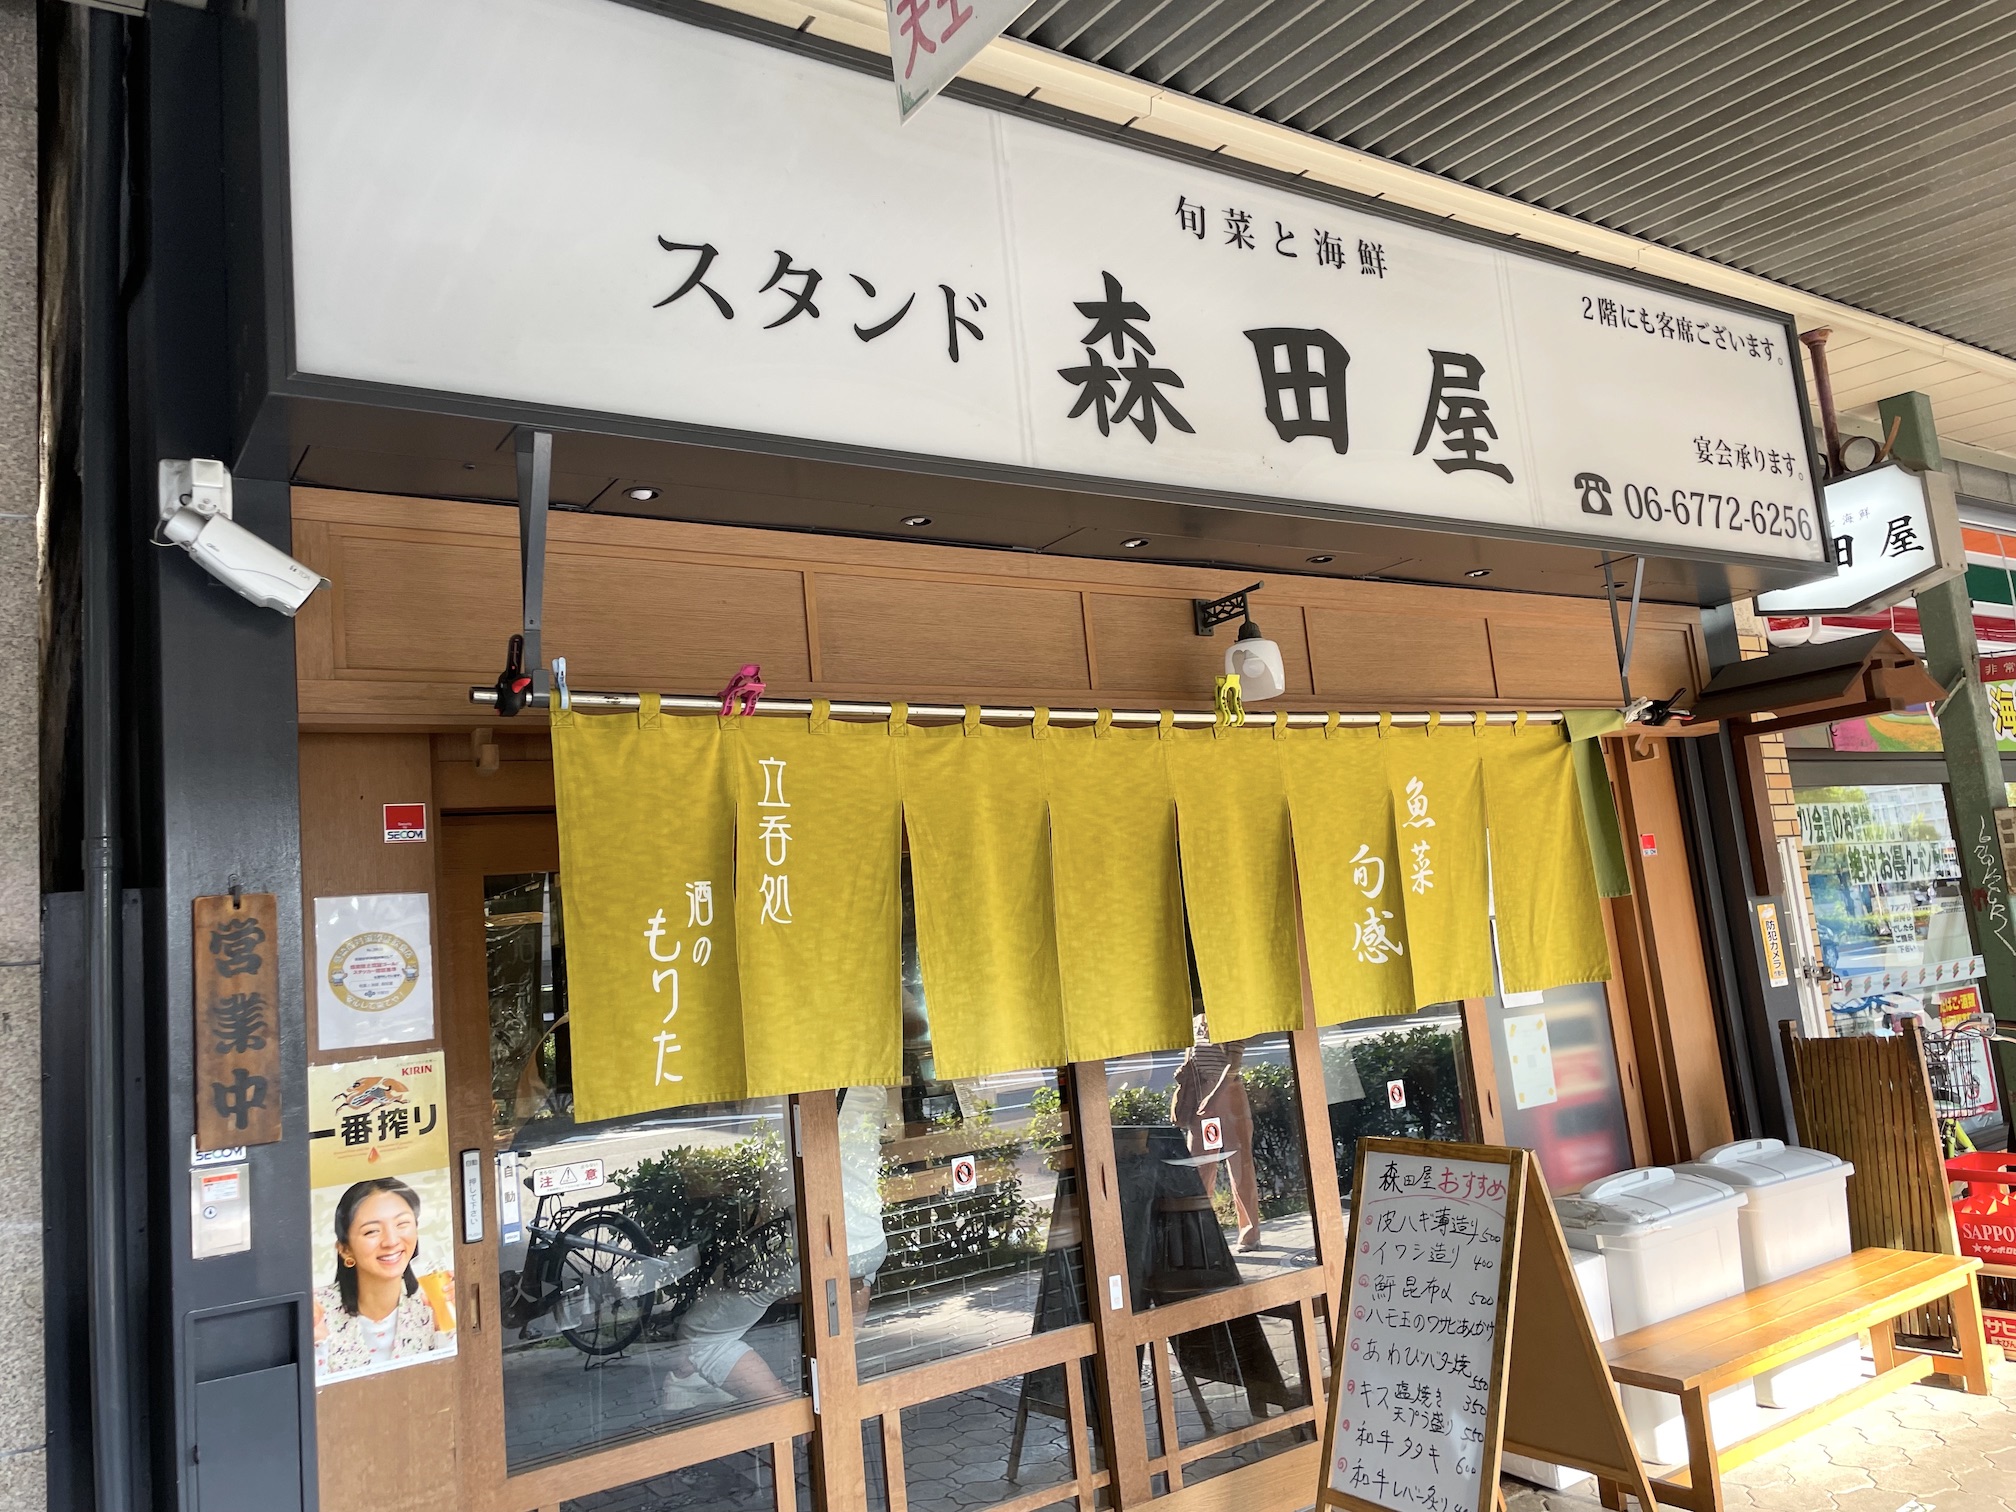 まったく波長があわなかった「旬菜と海鮮 スタンド森田屋」大阪市